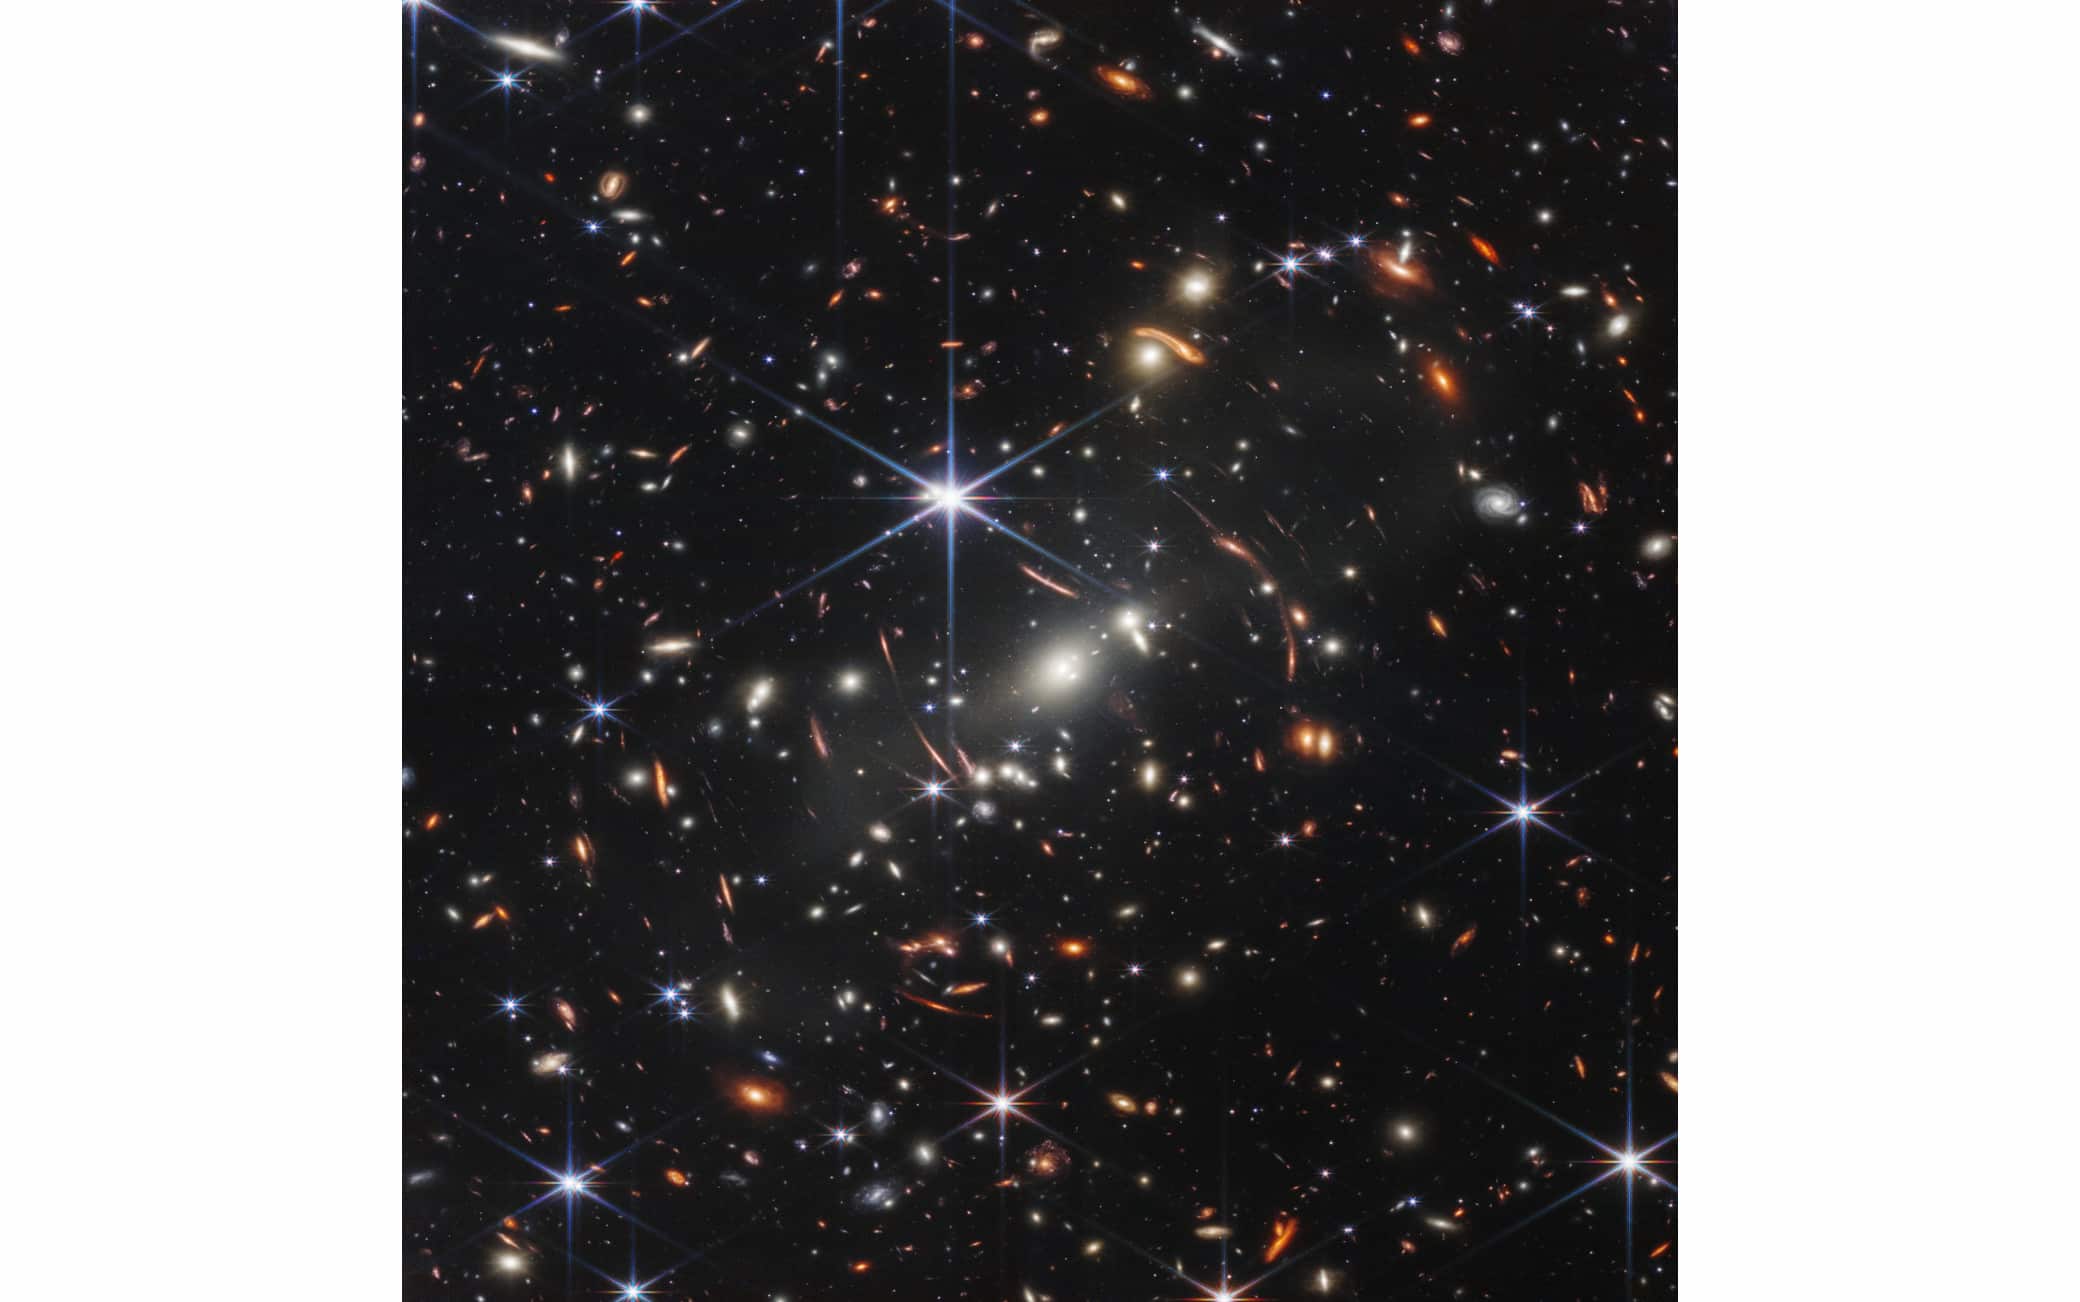 La prima immagine ripresa dal telescopio James Webb